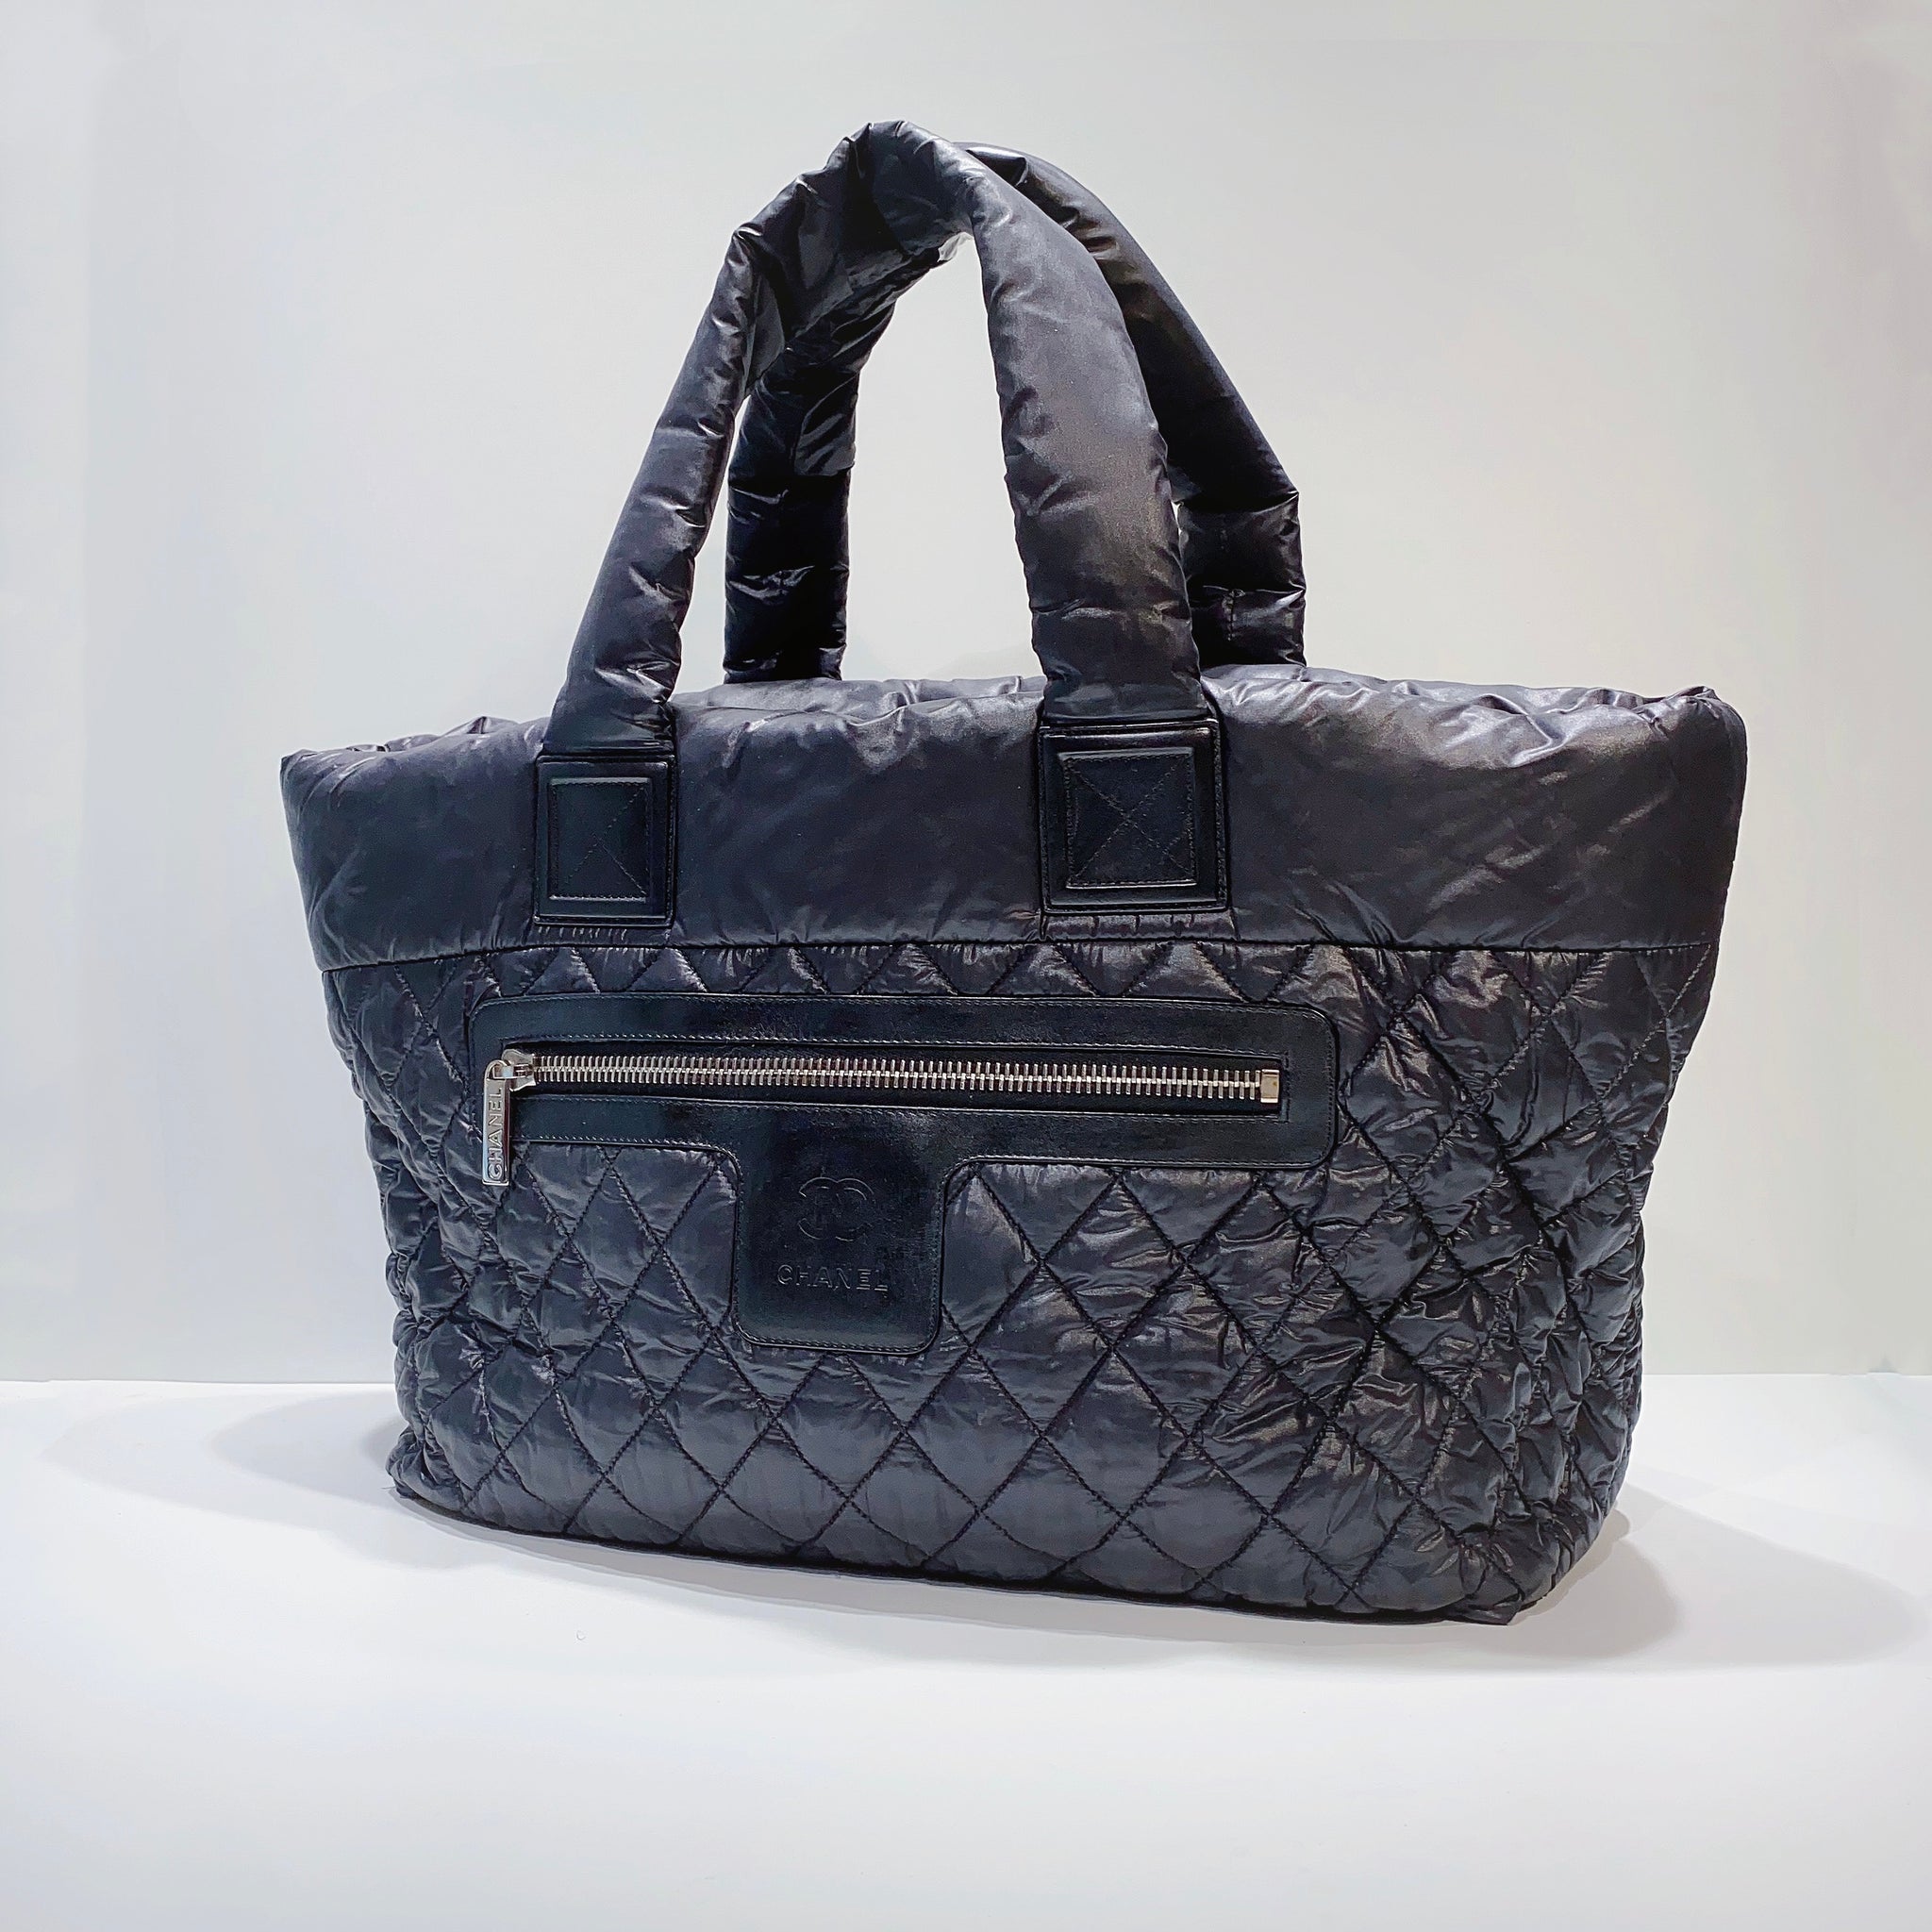 New Cocoon Bag Buena Vista 16” Messenger Bag Up To 16” Laptop Black | eBay